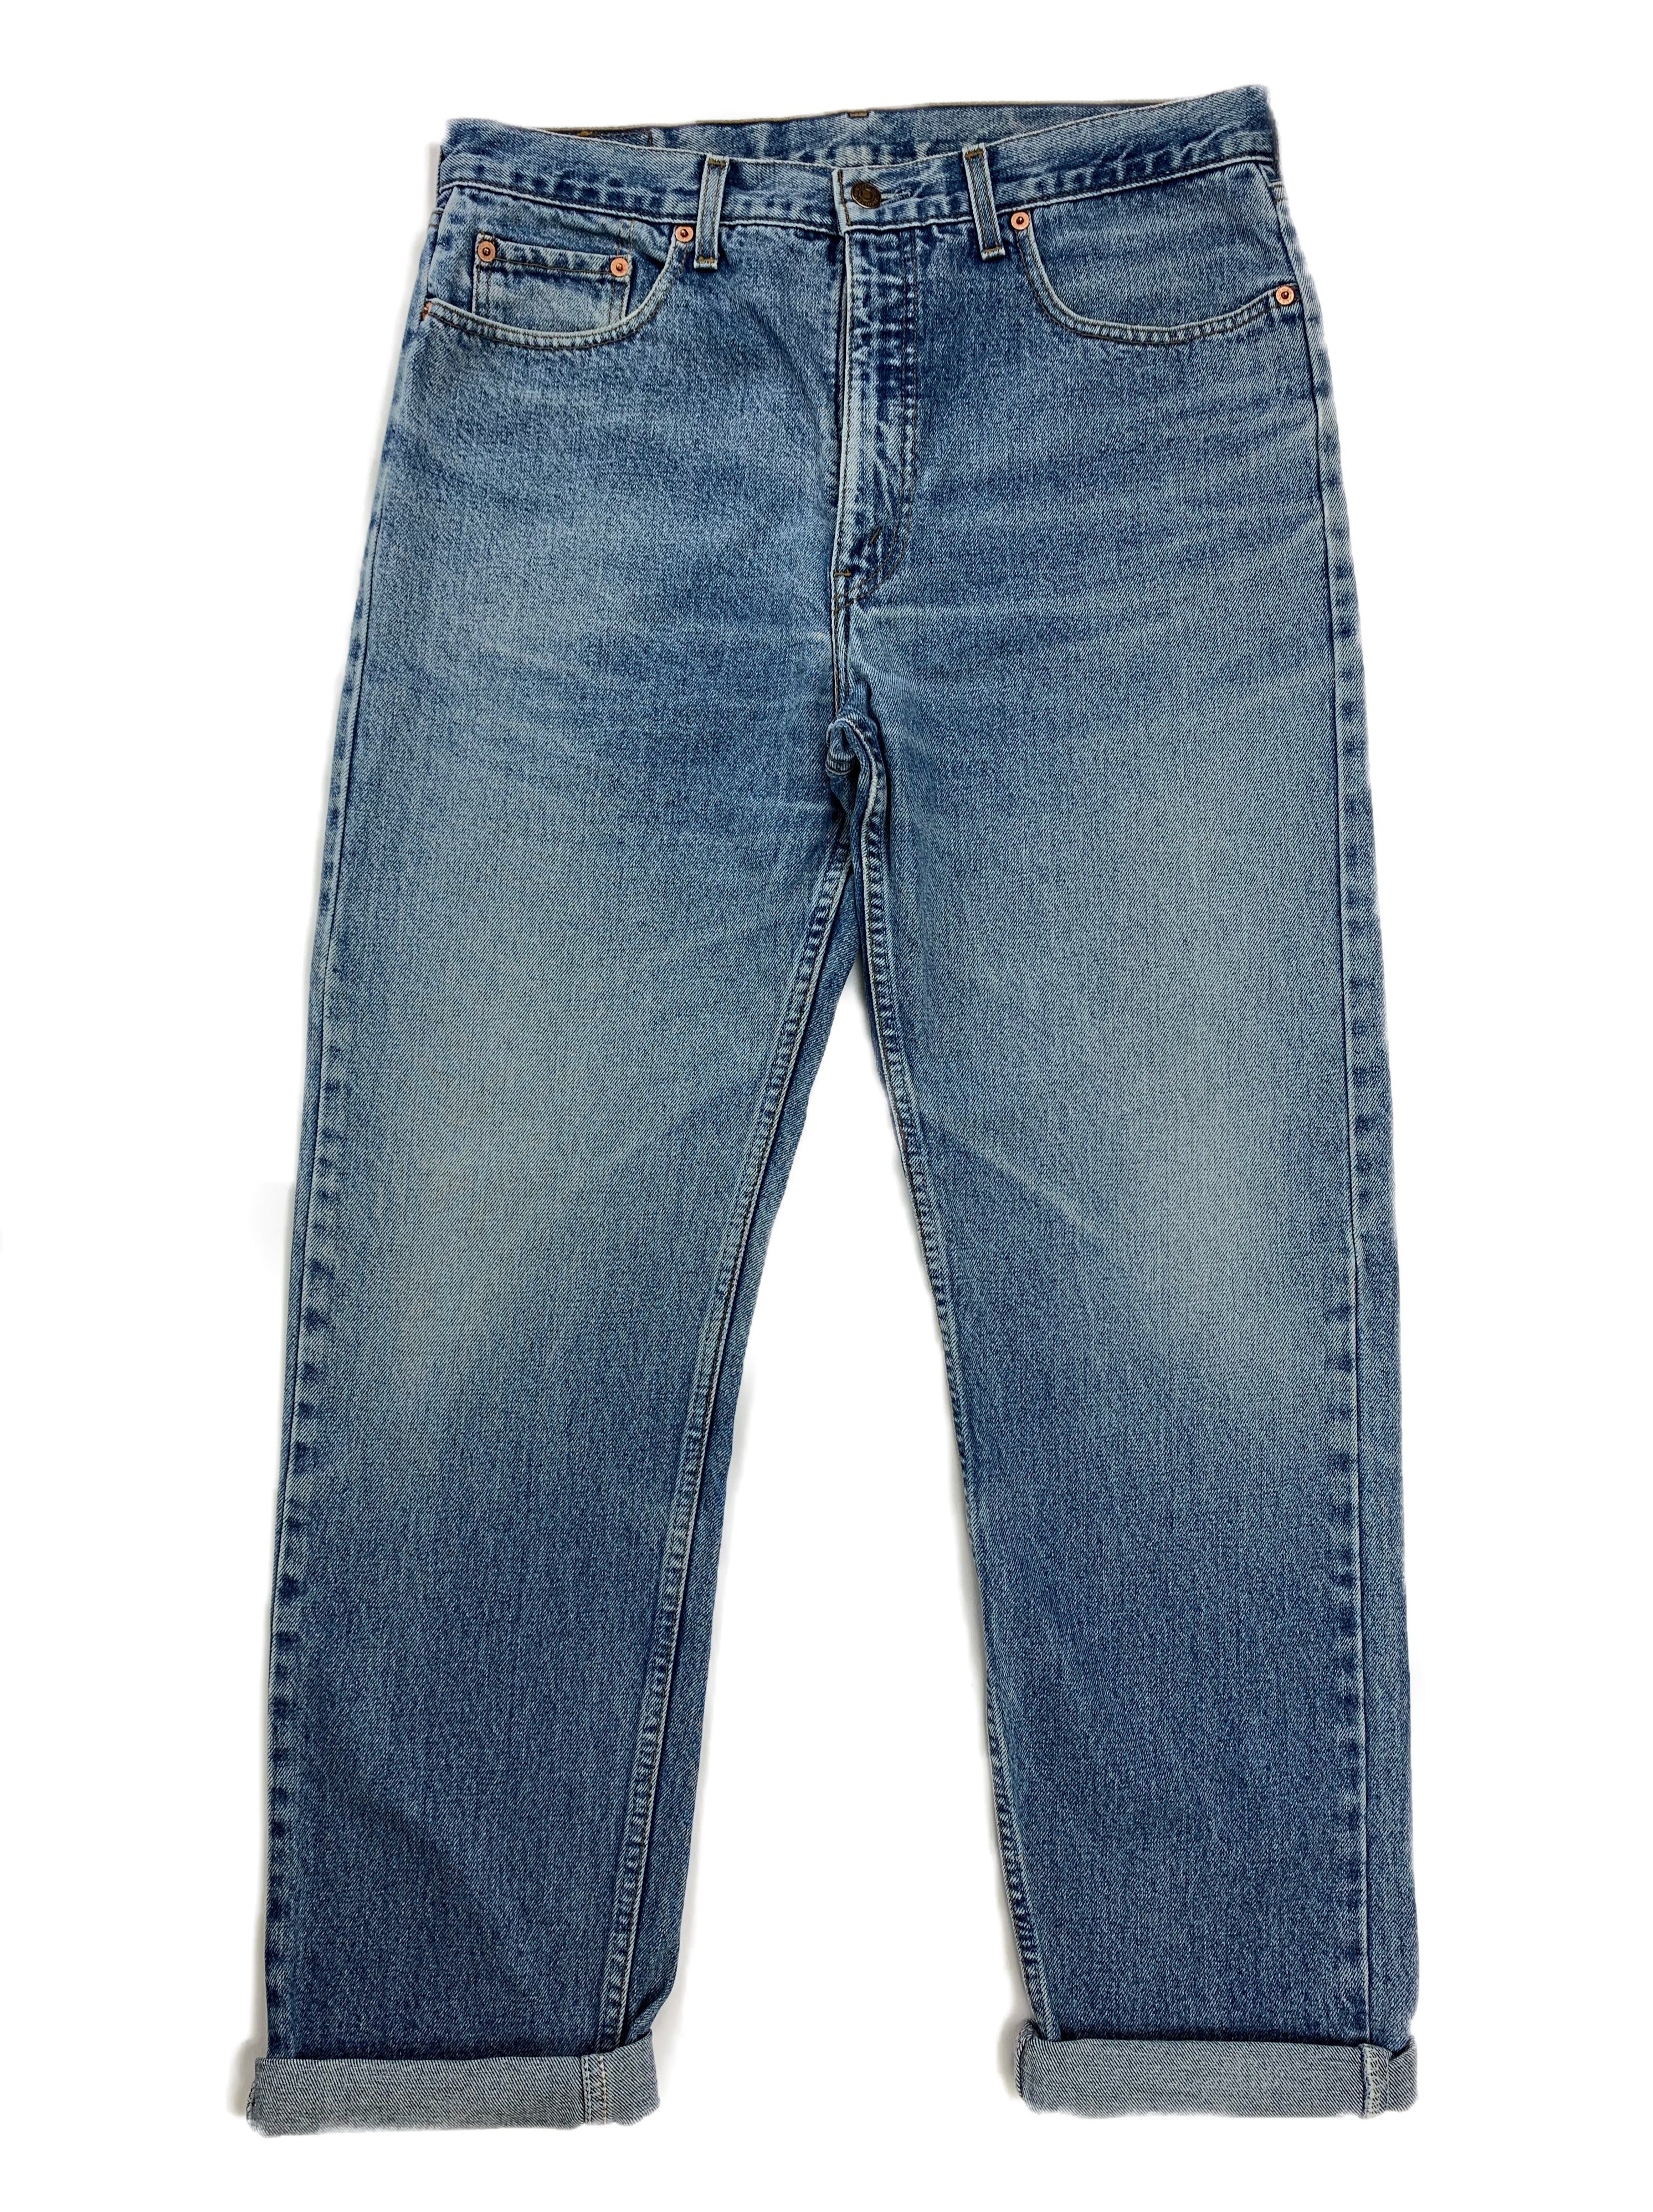 Rare Levi's Vintage jeans 615 - Restorecph